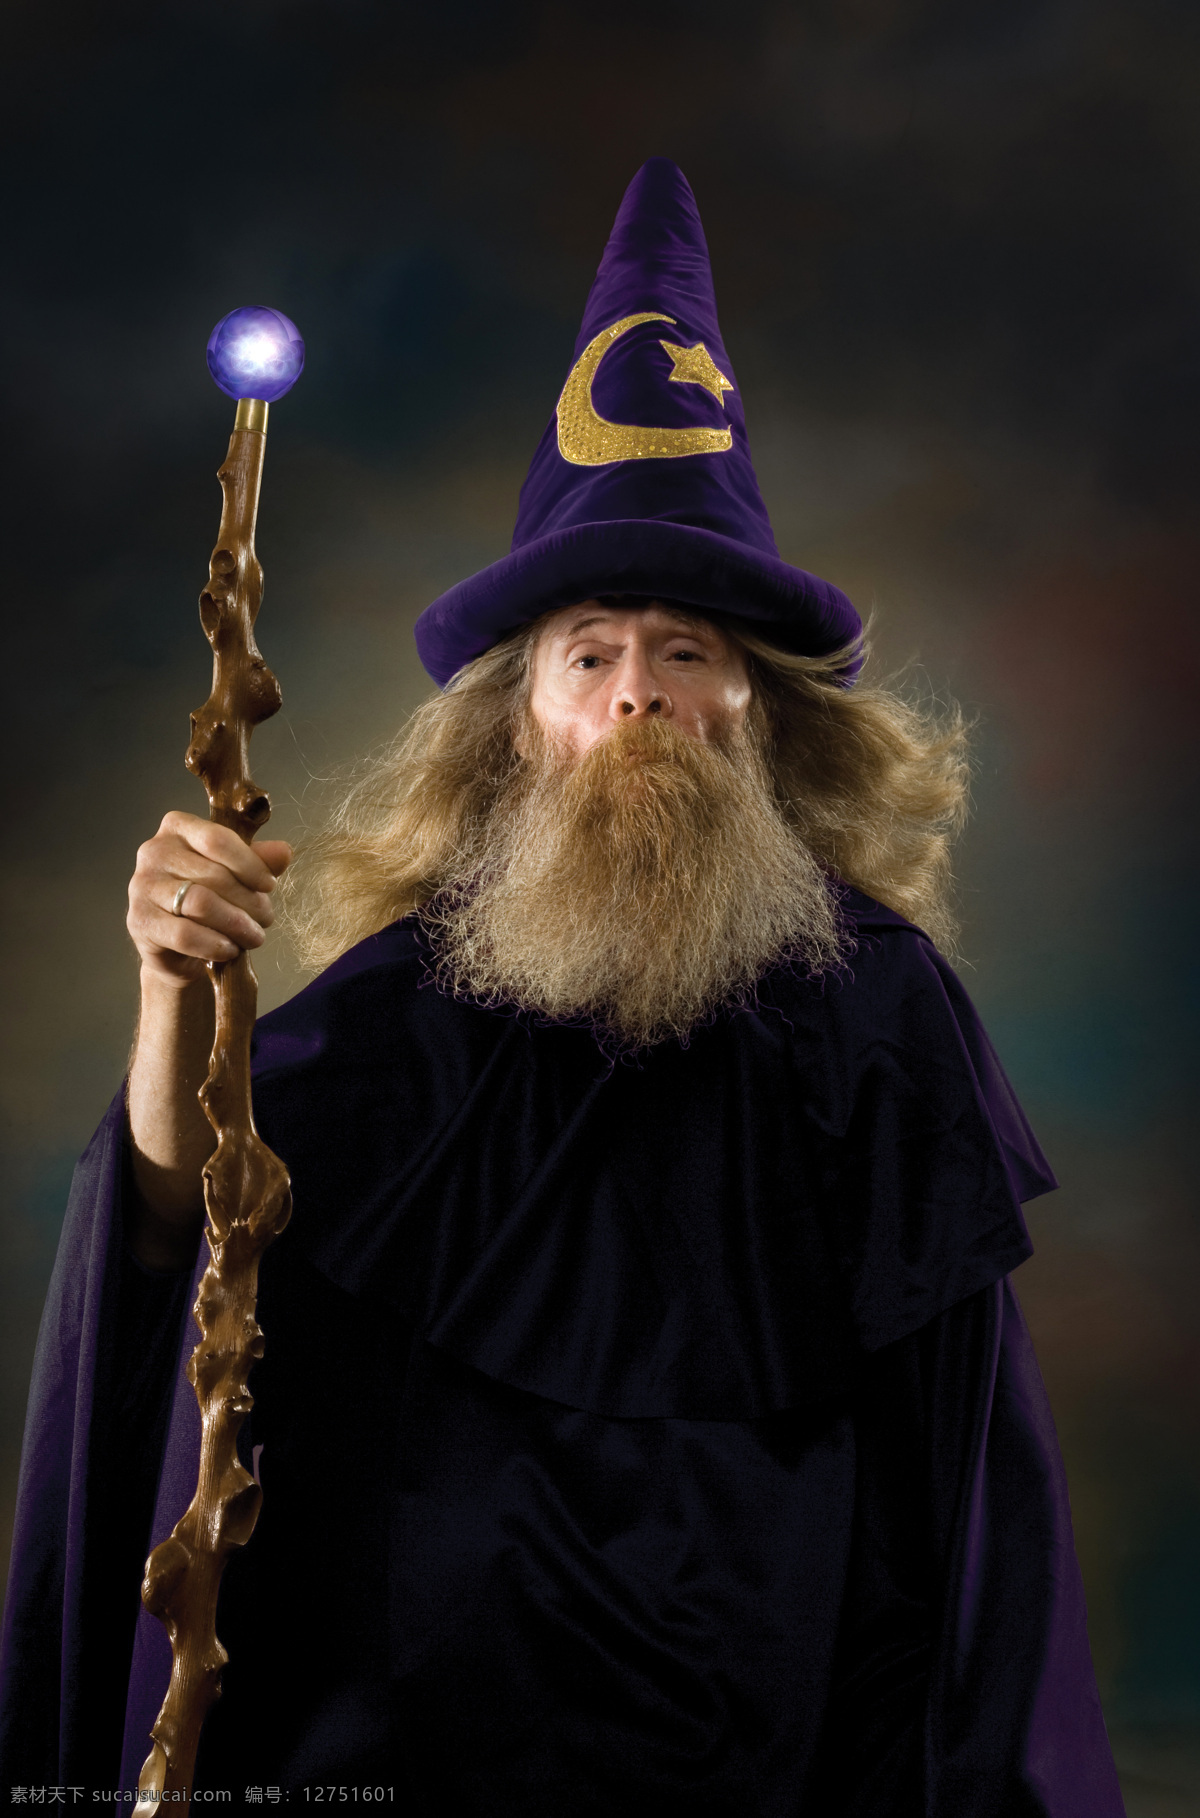 魔法师 法师 术士 巫师 拐杖 法杖 生活人物 人物图片